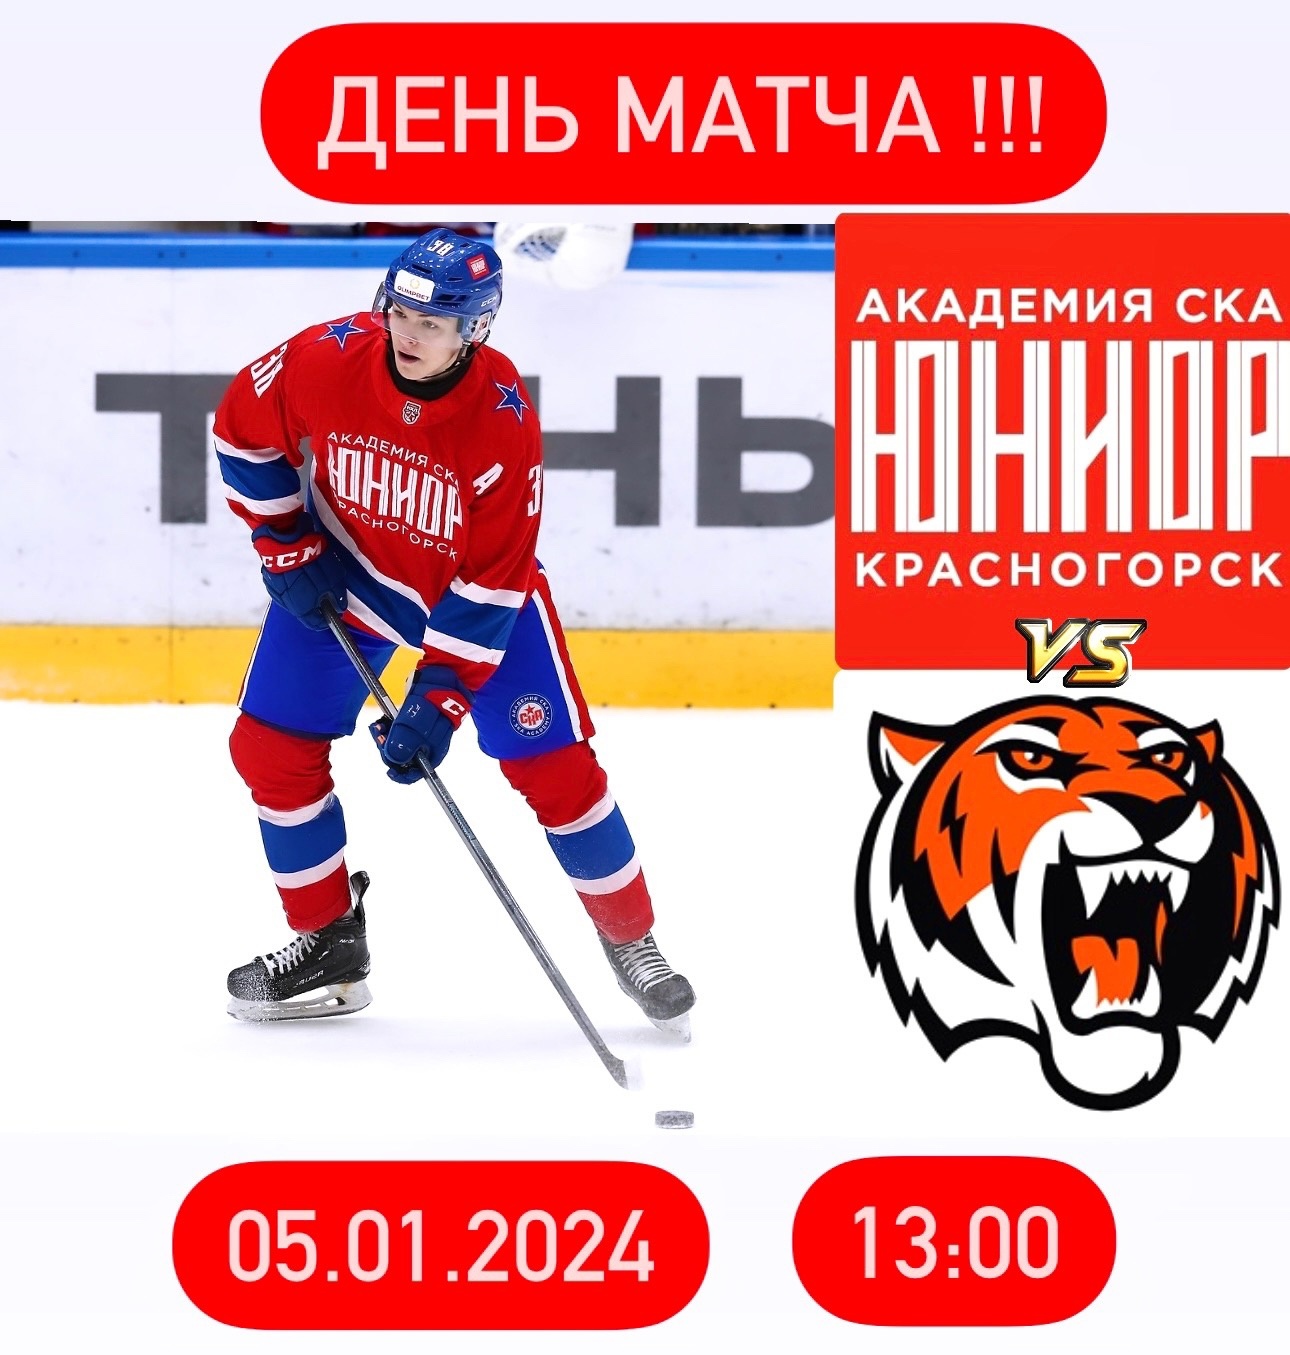 Матч между командами «Академия СКА-Юриор» vs. «Амурские тигры».